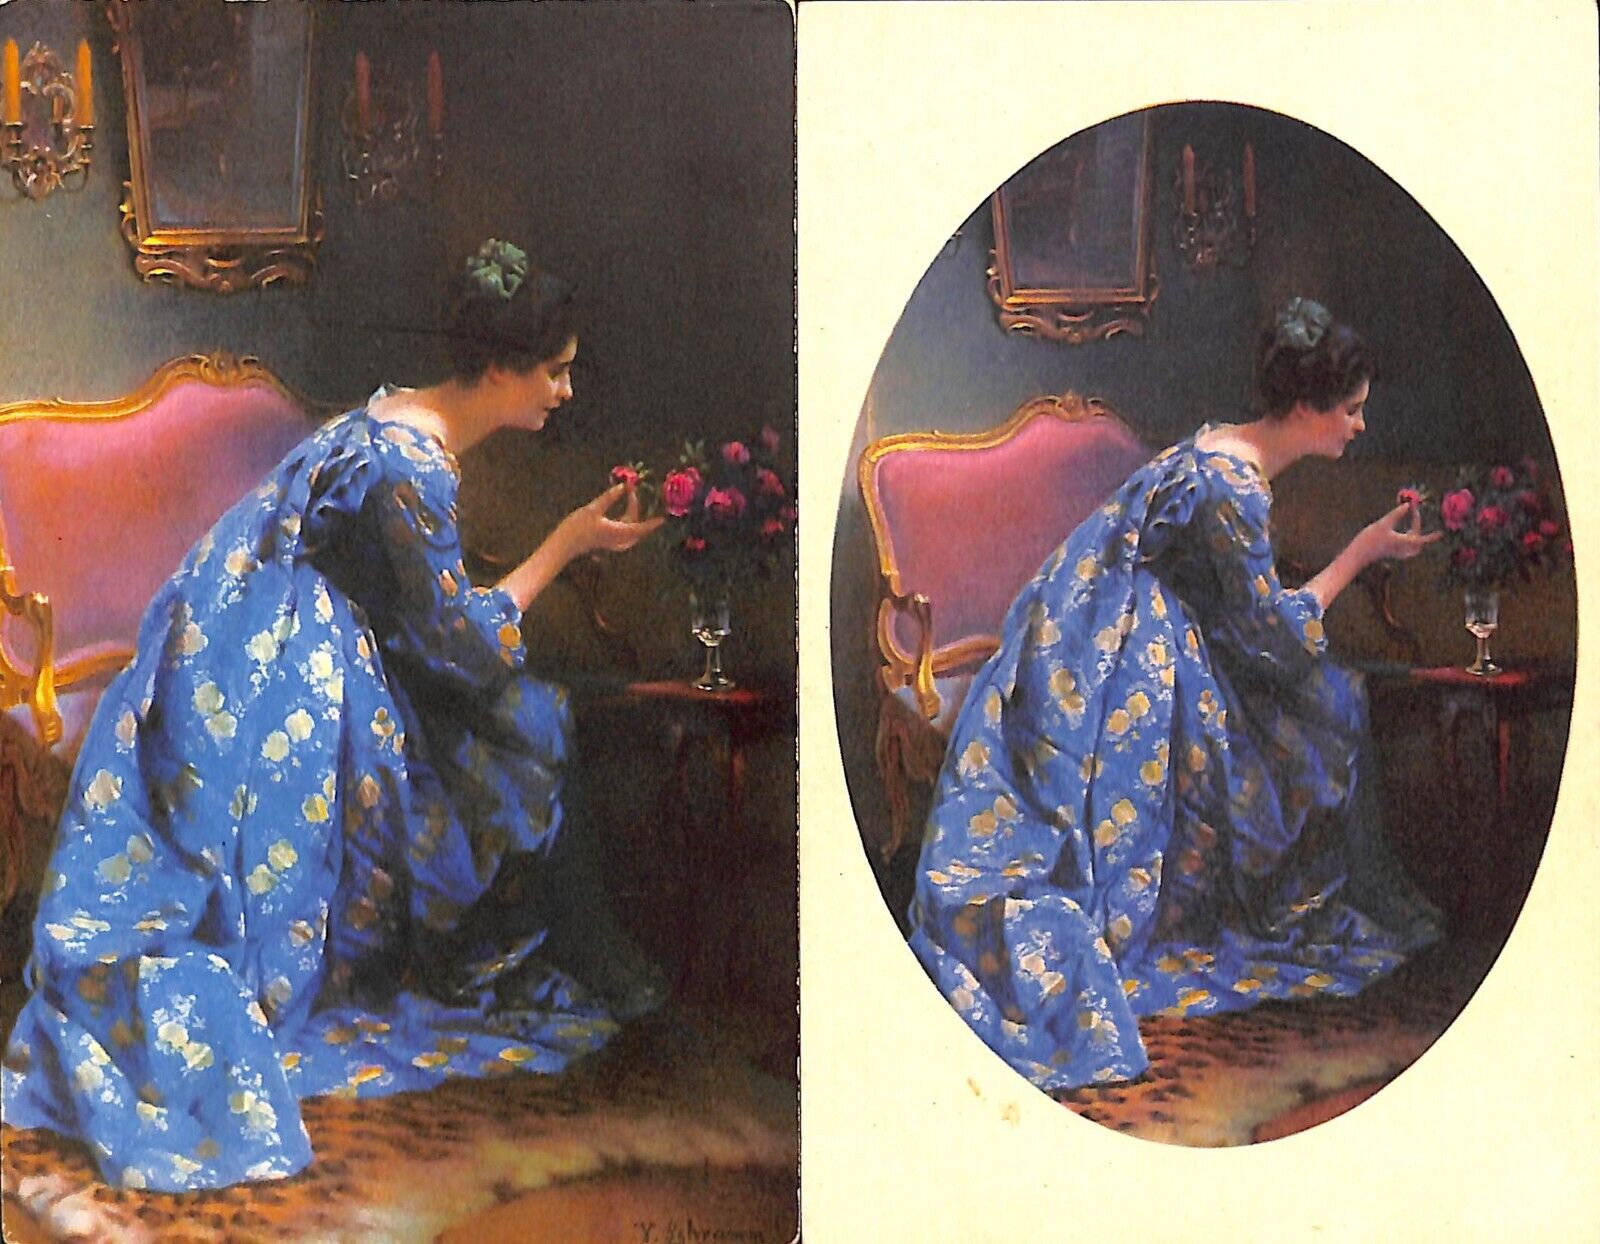 Lot of 3 vintage fine art postcards V. Schramm - The Blue Lady & Art Enjoyment